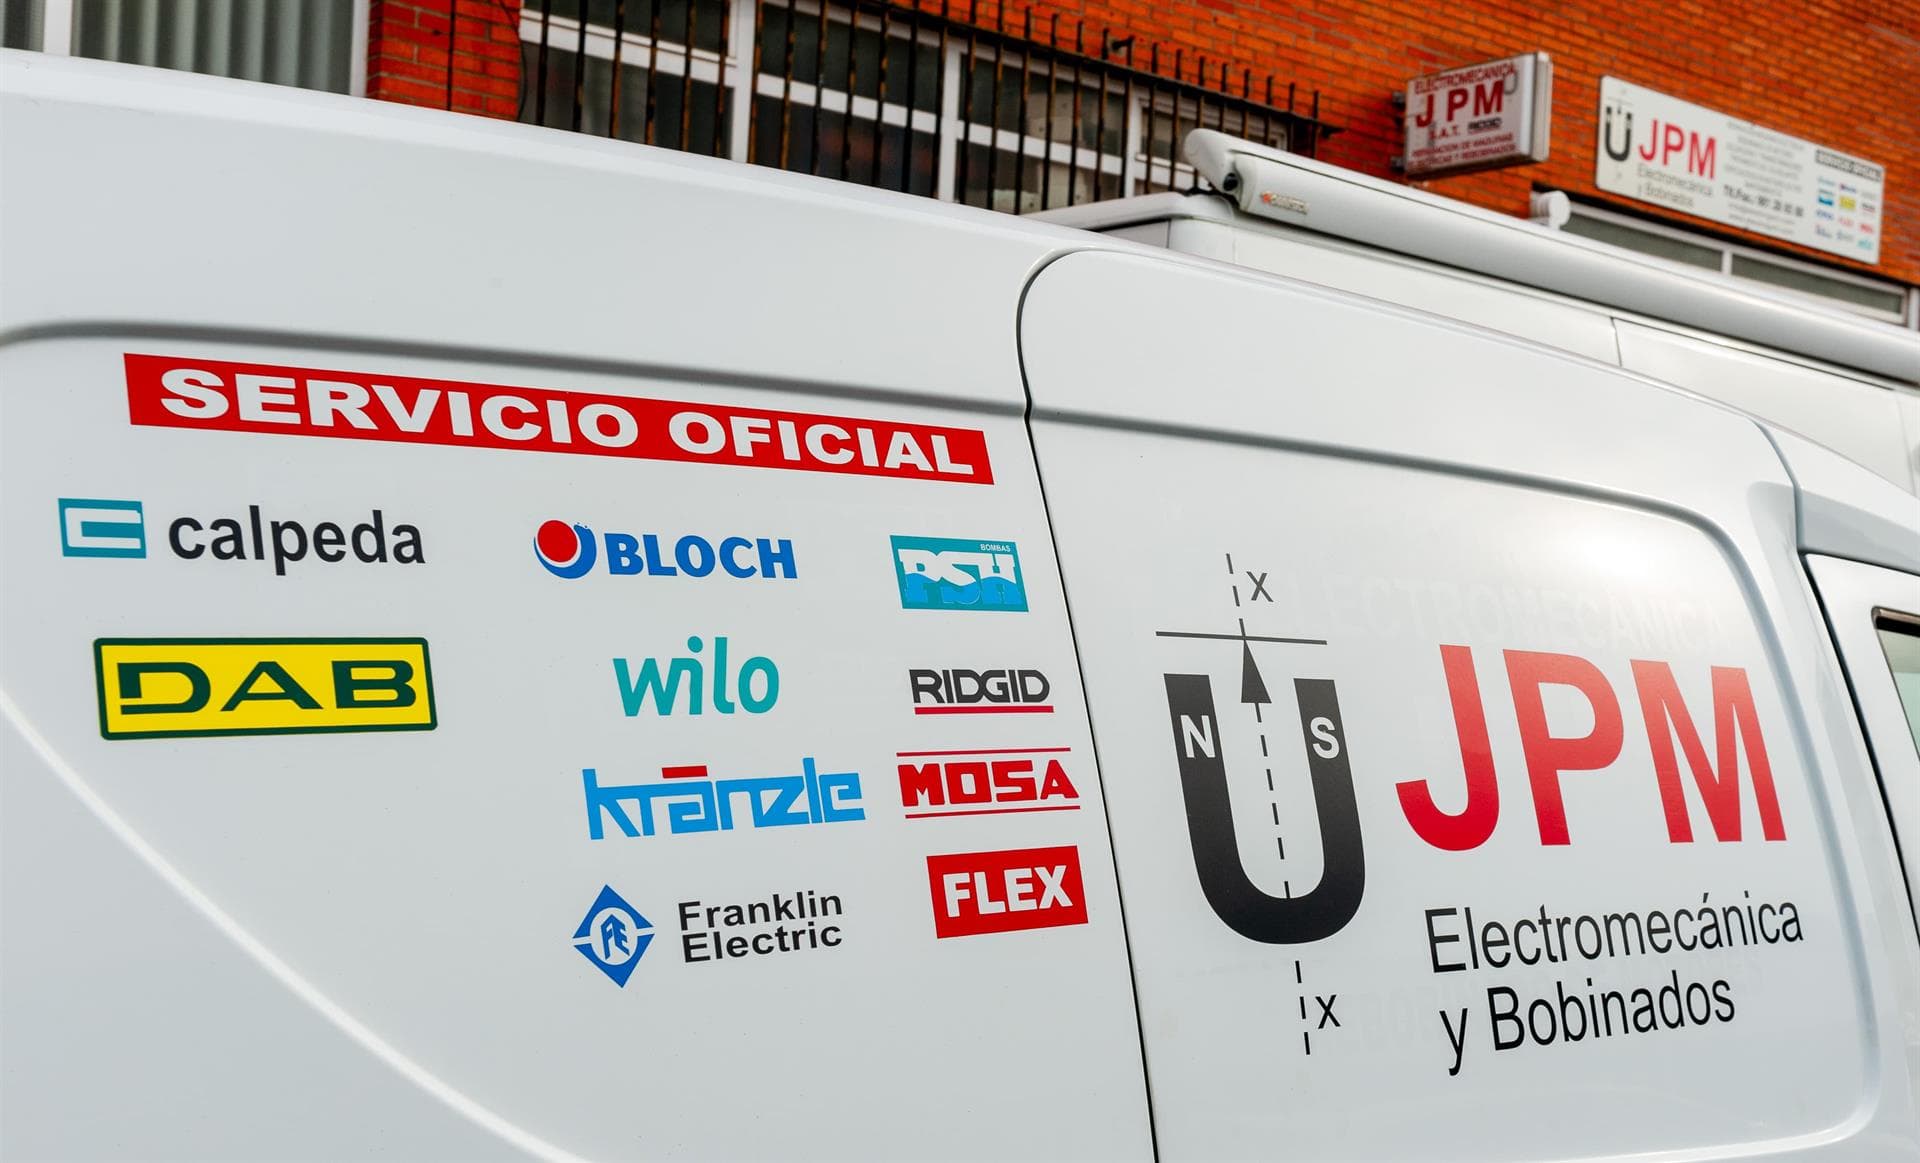  Mantenimiento y reparaciones eléctricas y mecánicas en A Coruña